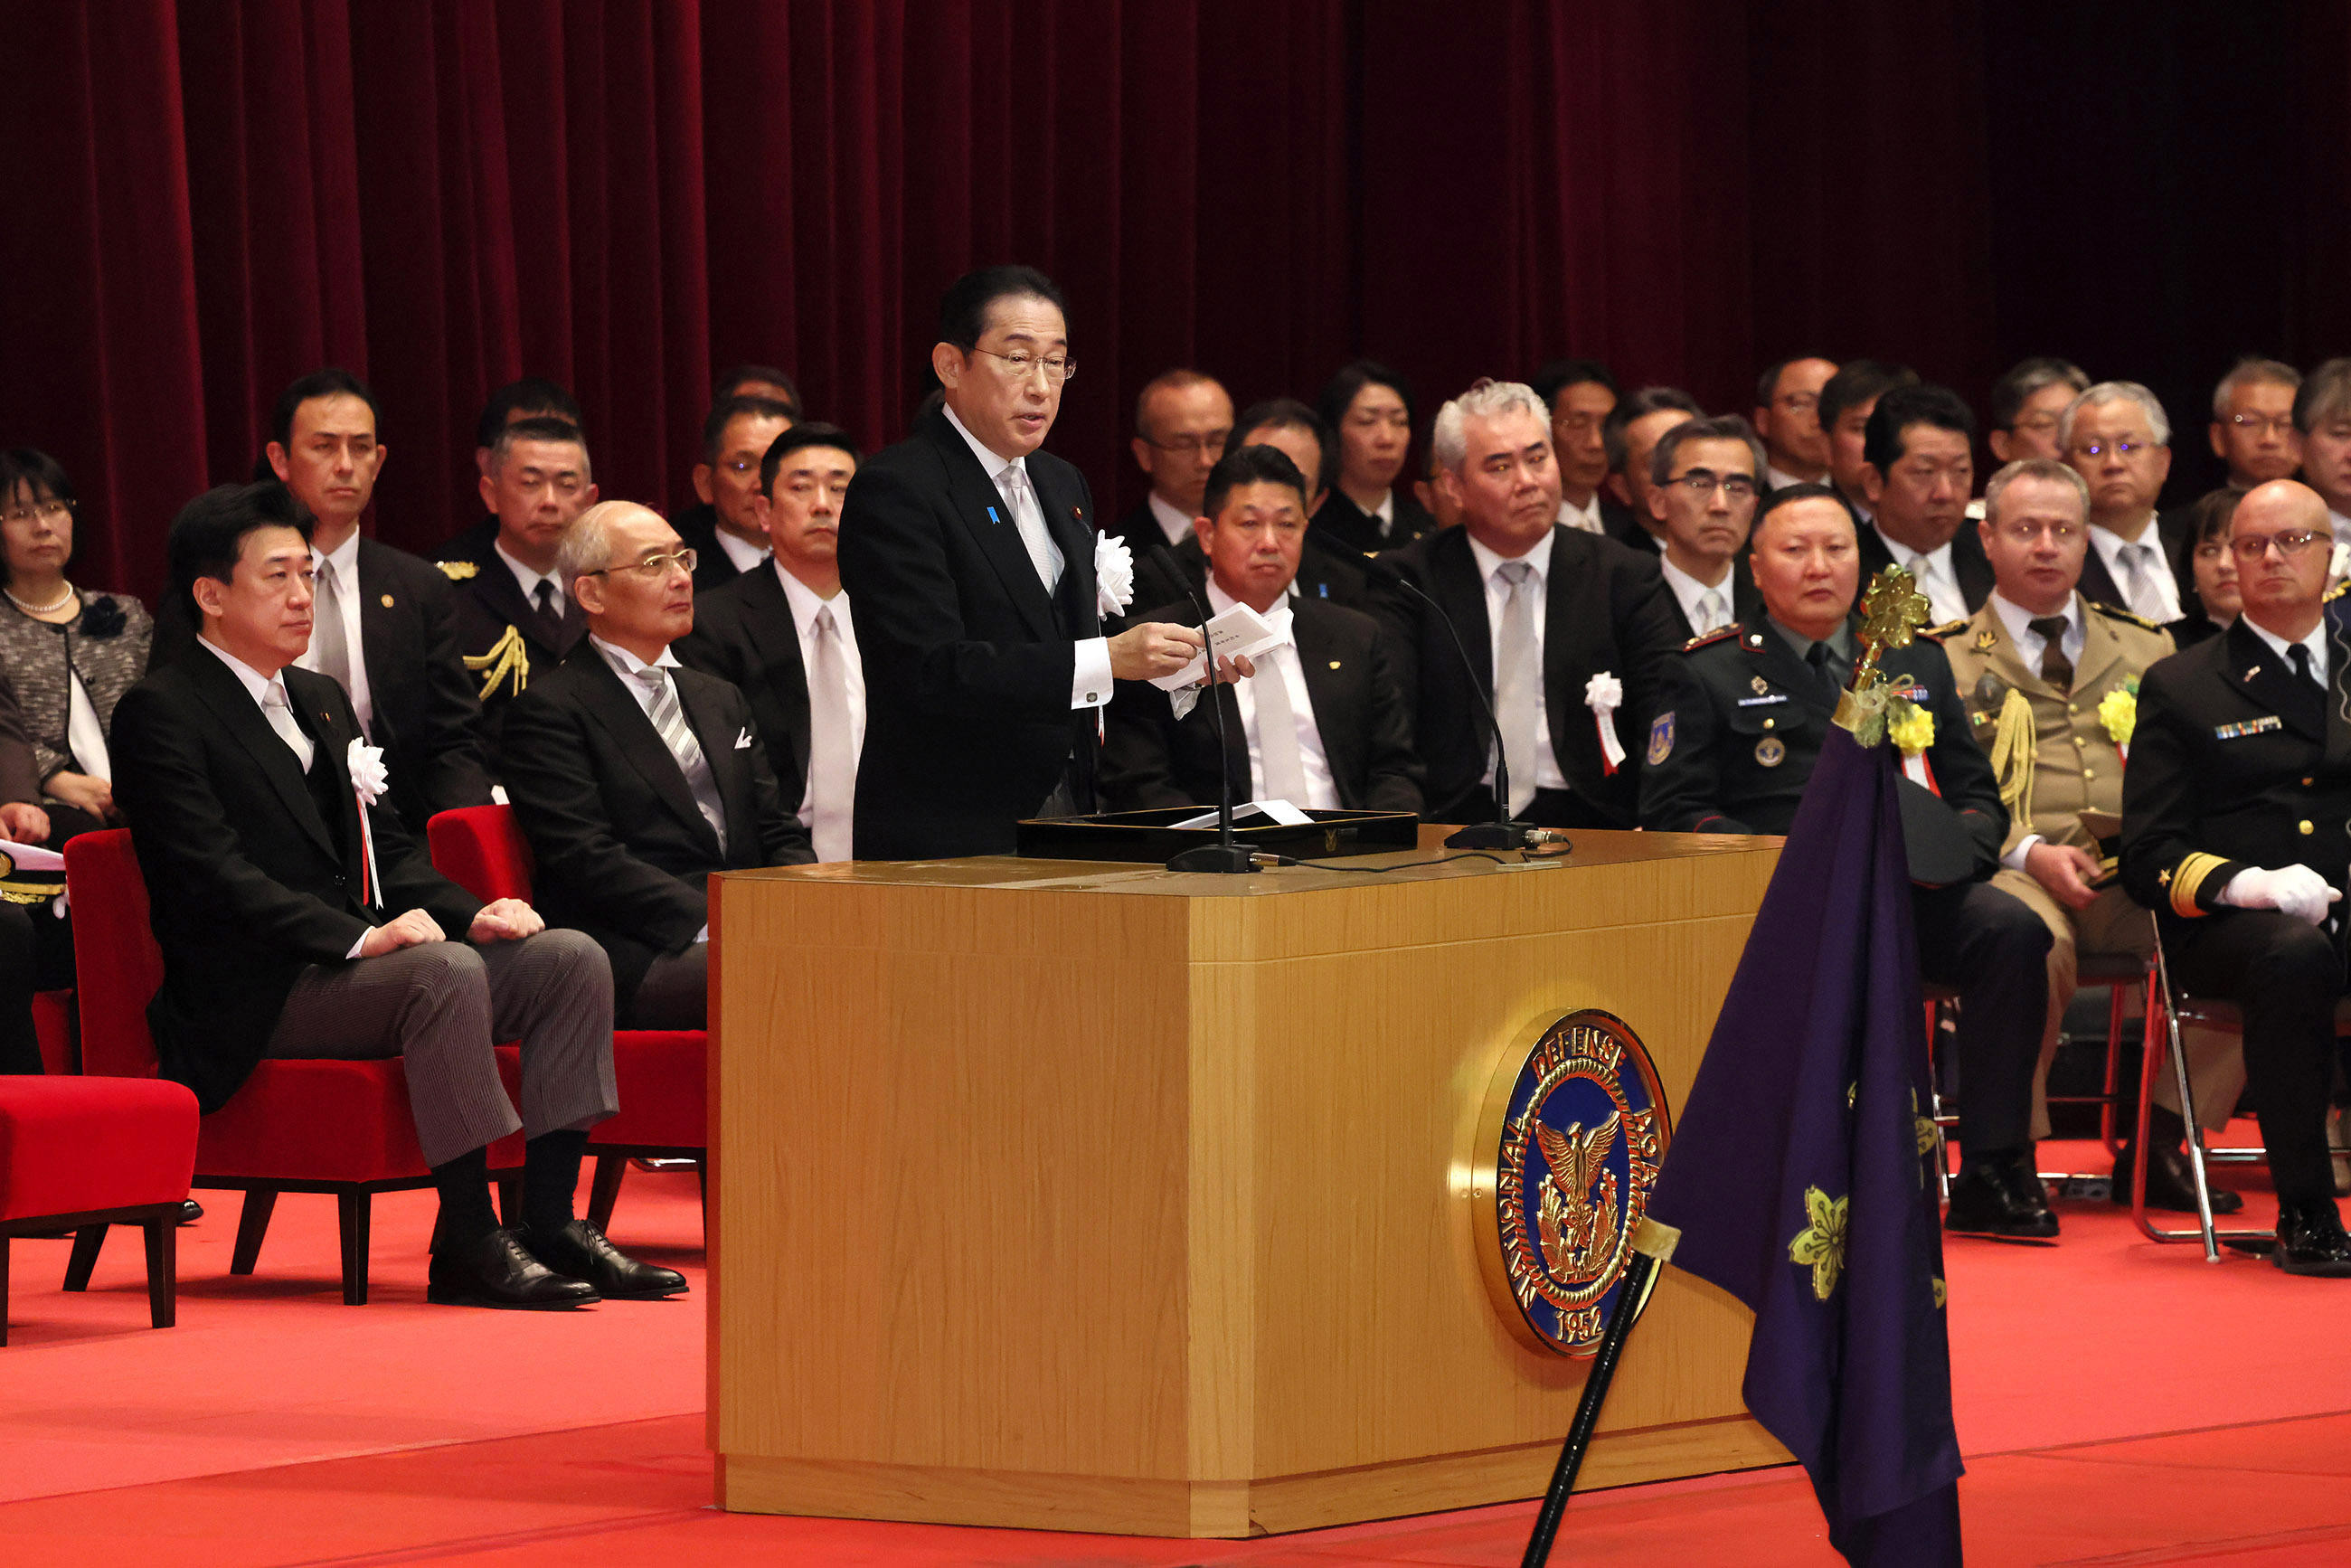 Prime Minister Kishida delivering a commencement address (2)